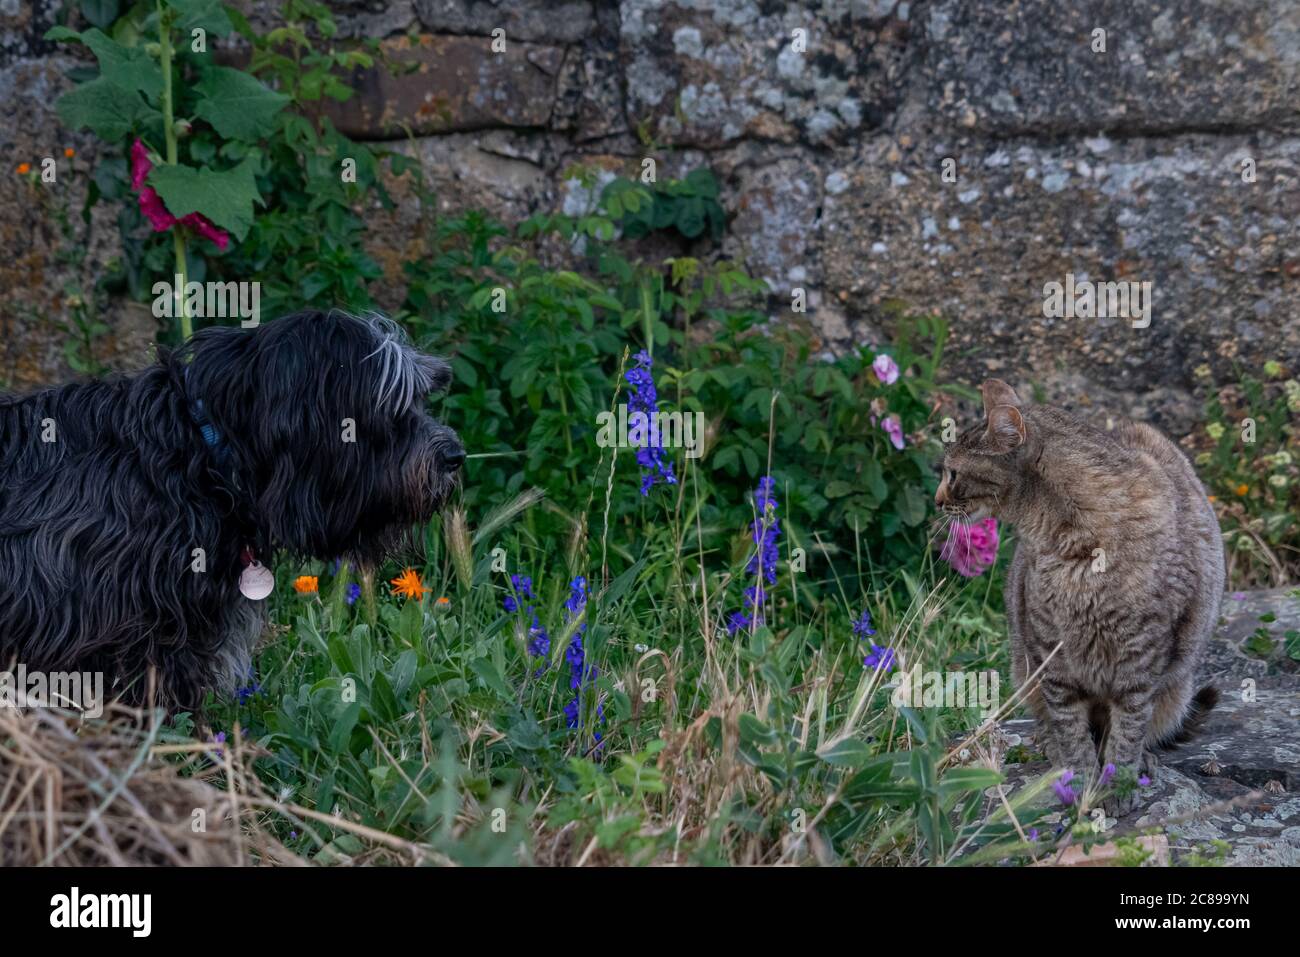 Cane e gatto si guardano con curiosità Foto Stock